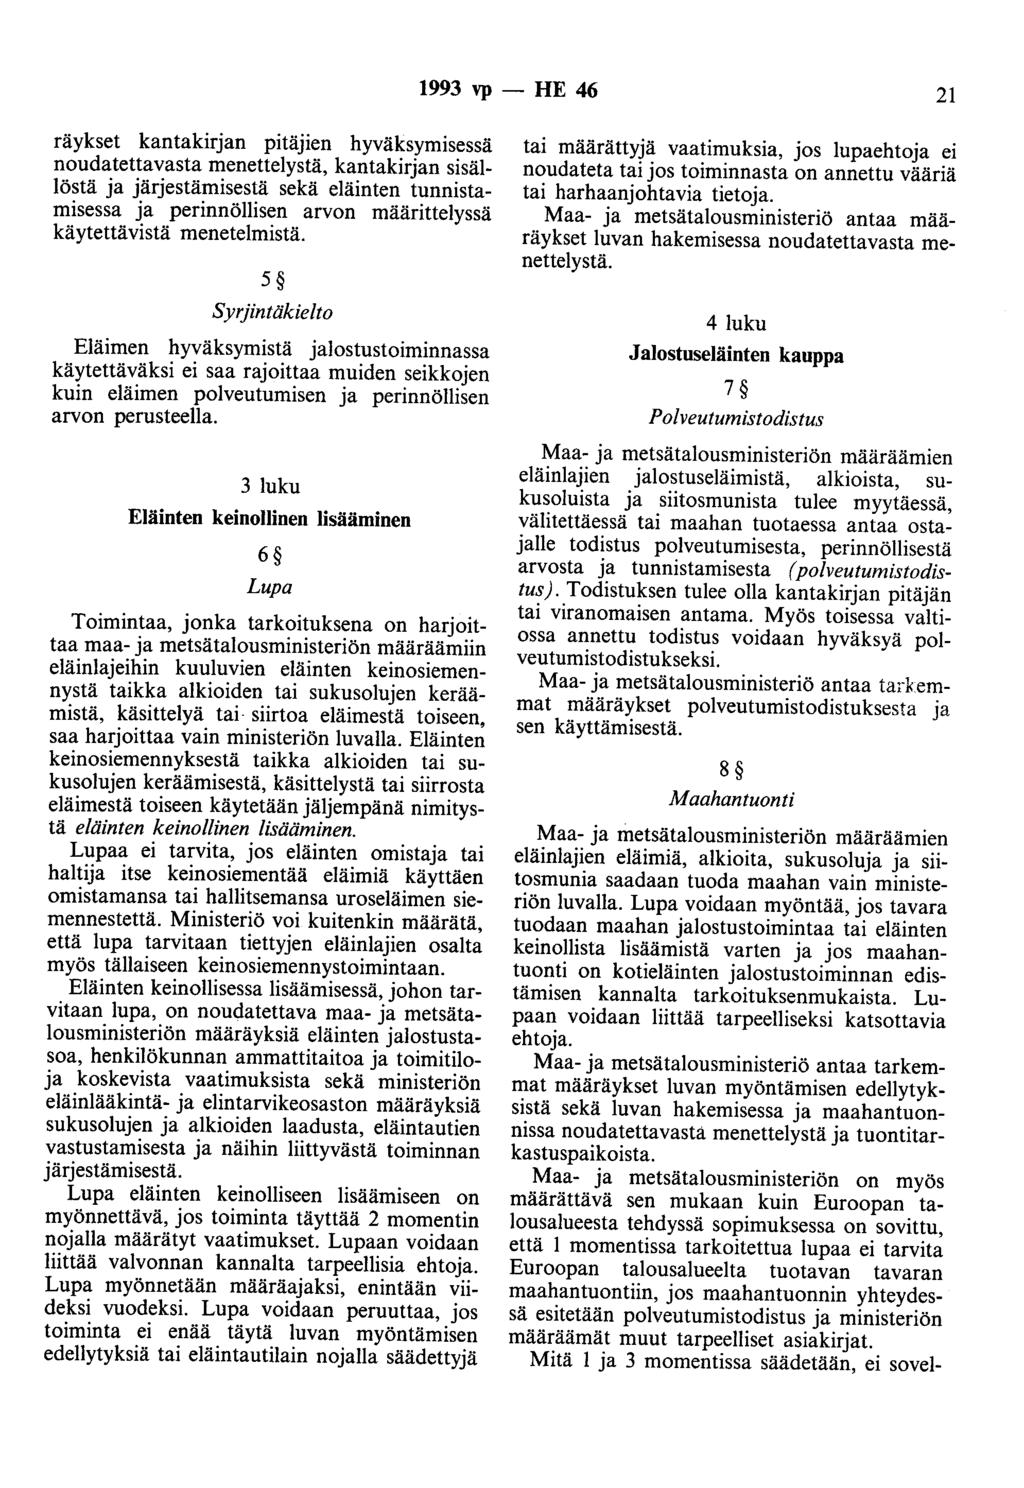 1993 vp - HE 46 21 räykset kantakirjan pitäjien hyväksymisessä noudatettavasta menettelystä, kantakirjan sisällöstä ja järjestämisestä sekä eläinten tunnistamisessa ja perinnöllisen arvon